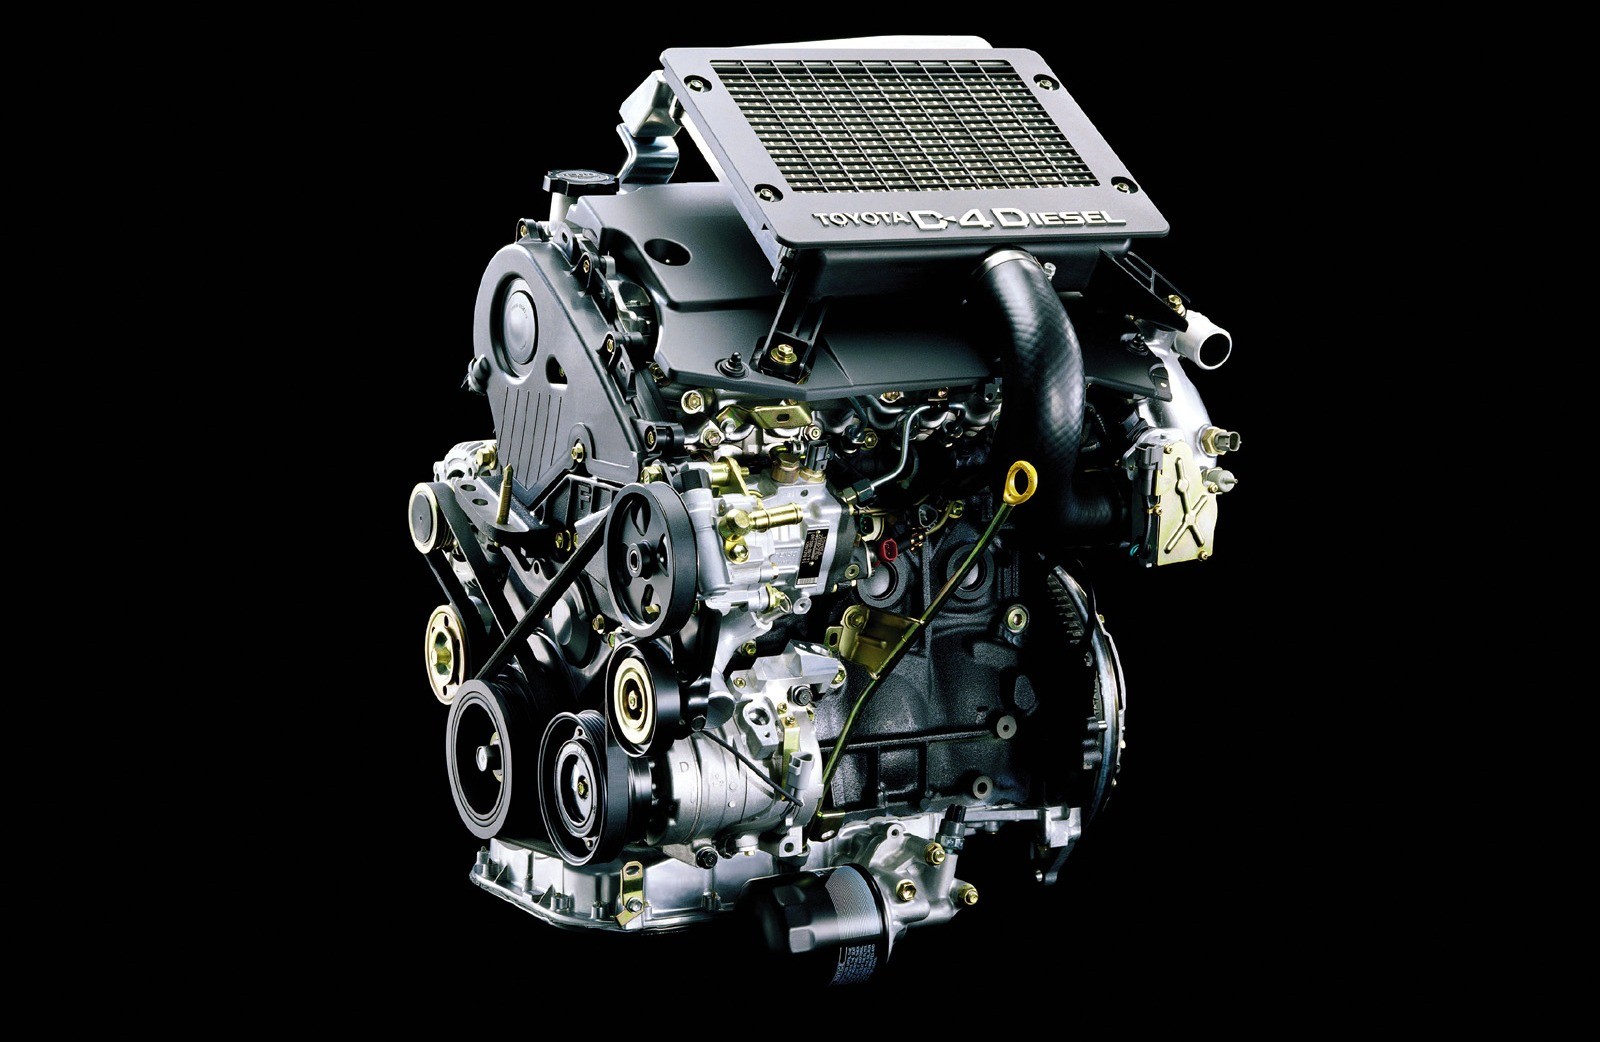 Двигатель тойота 1gd-ftv 2.8 литра - характеристики, ресурс, проблемы, отзывы